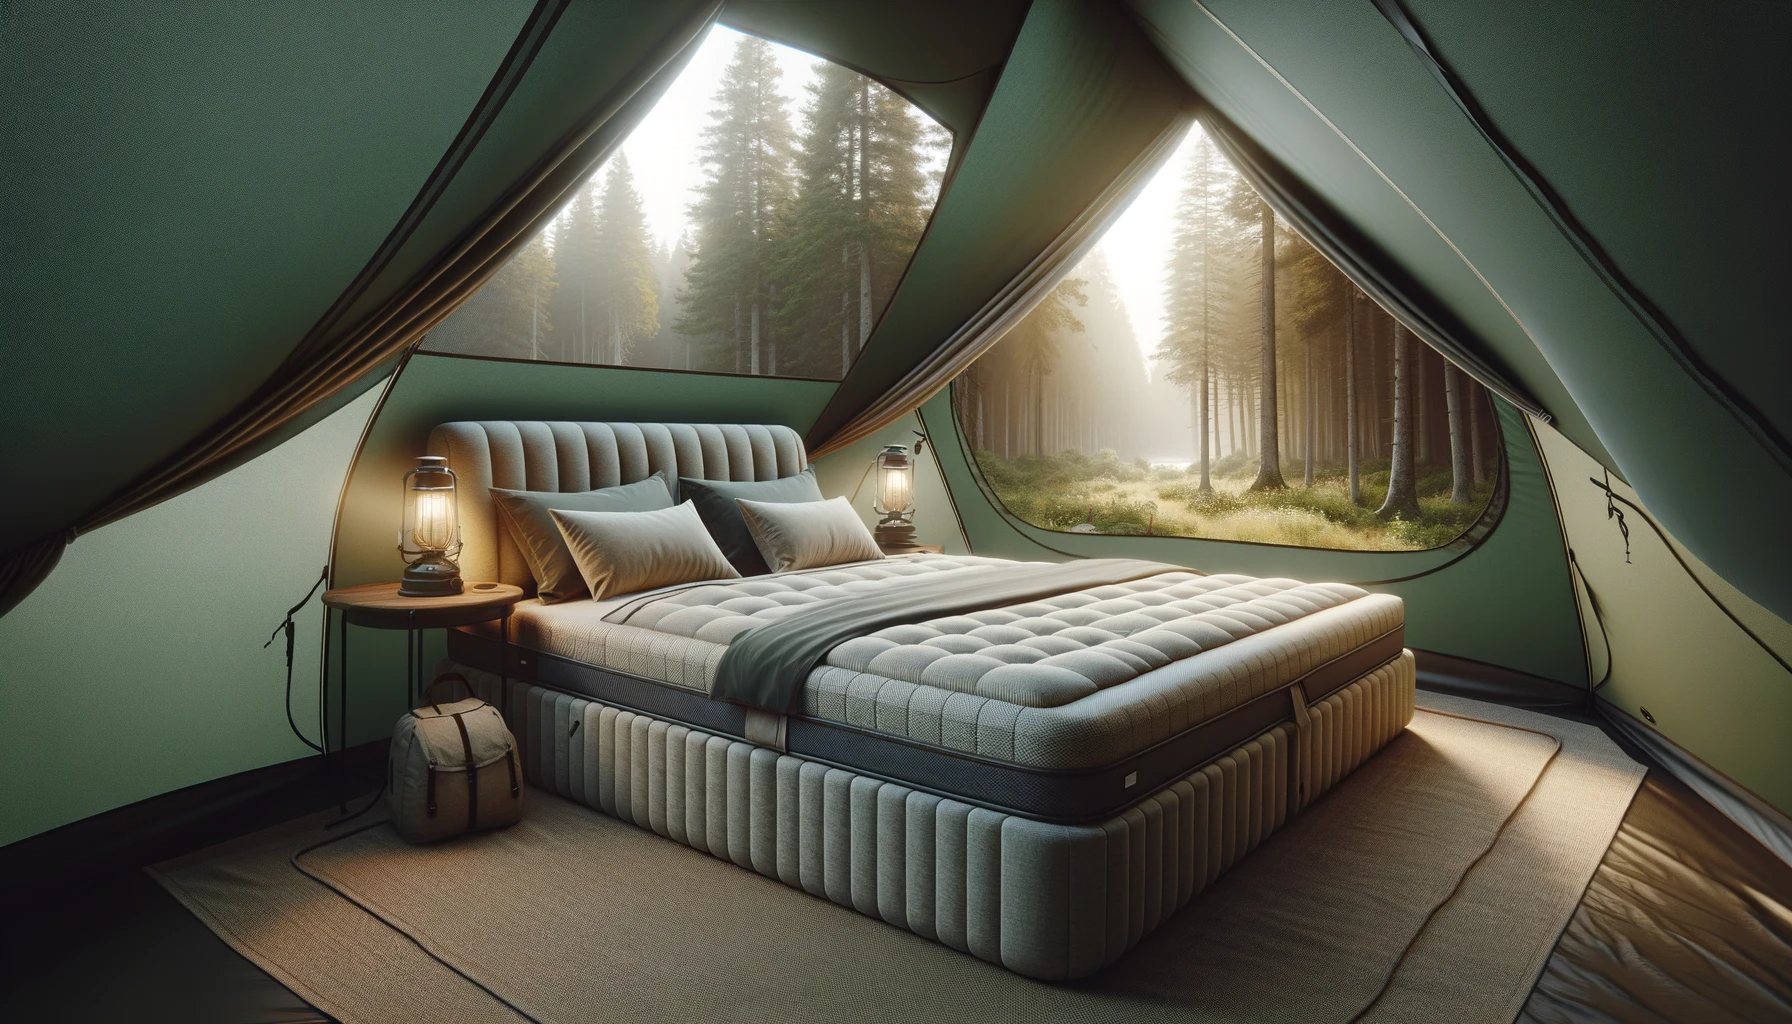 what size tent fits a queen mattress